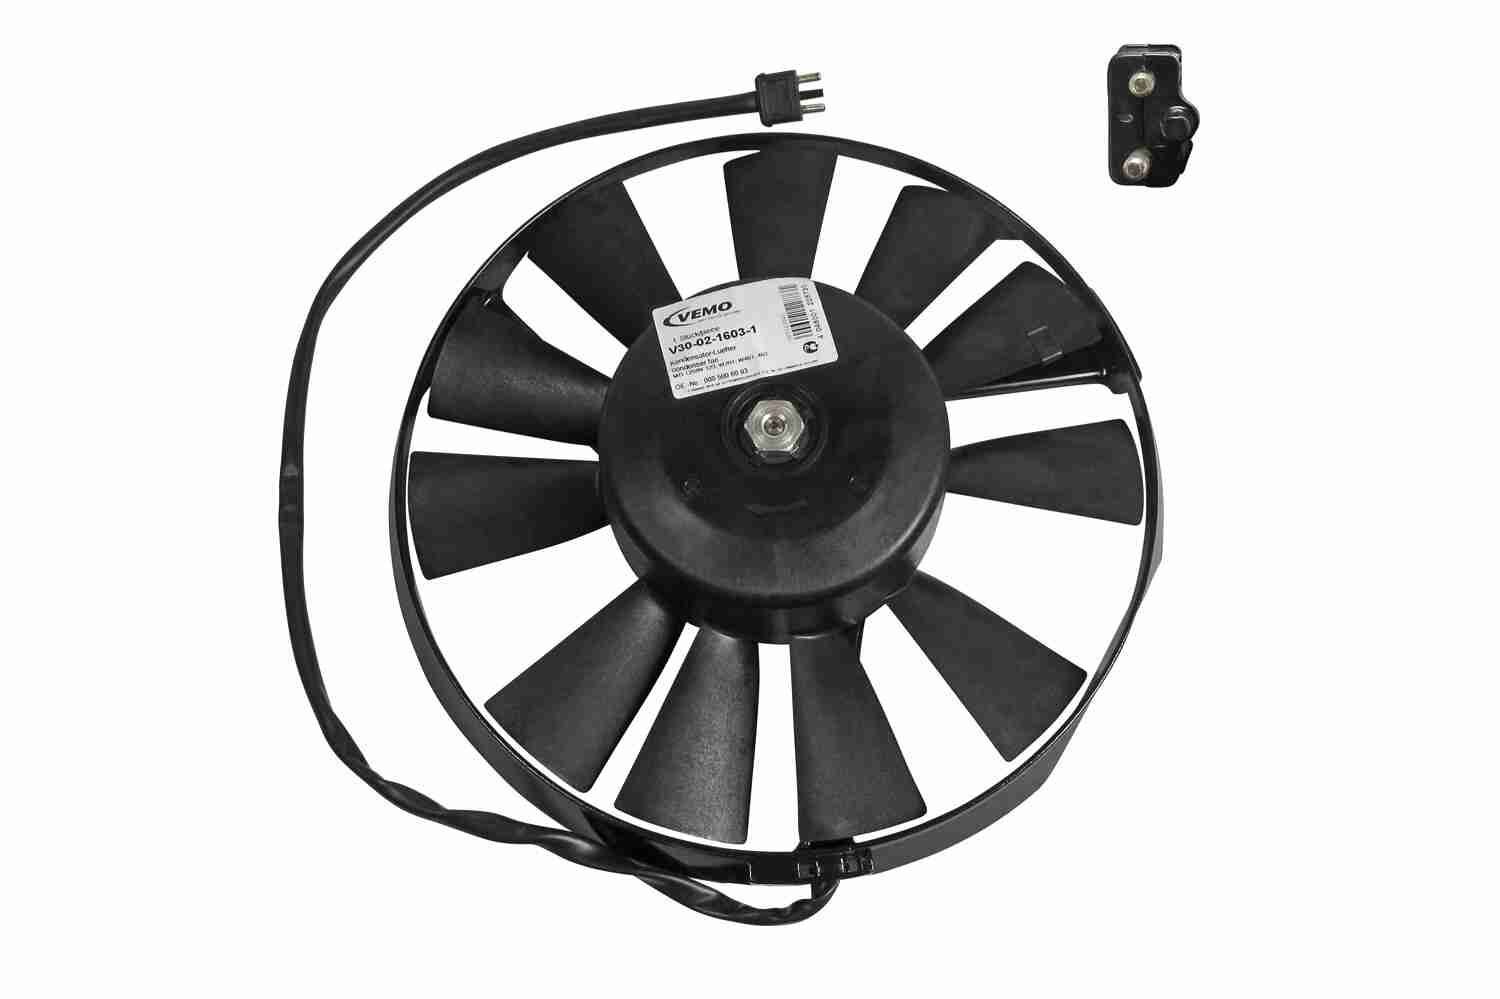 Ventilator, condensor, airconditioning VEMO V30-02-1603-1 Beoordelingen